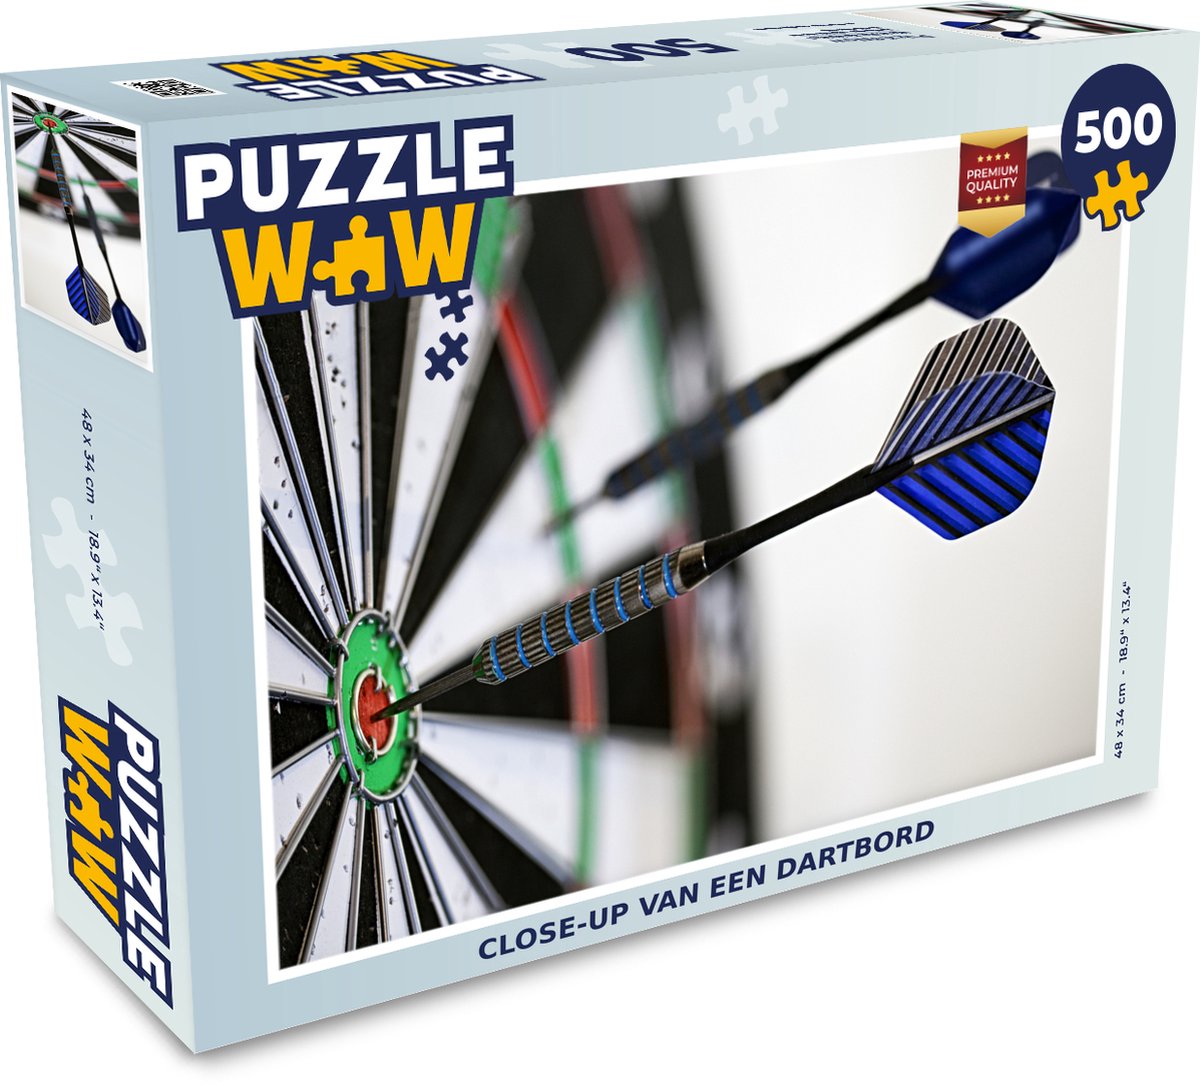 Puzzel 500 stukjes Darten - Close-up van een dartbord - PuzzleWow heeft +100000 puzzels